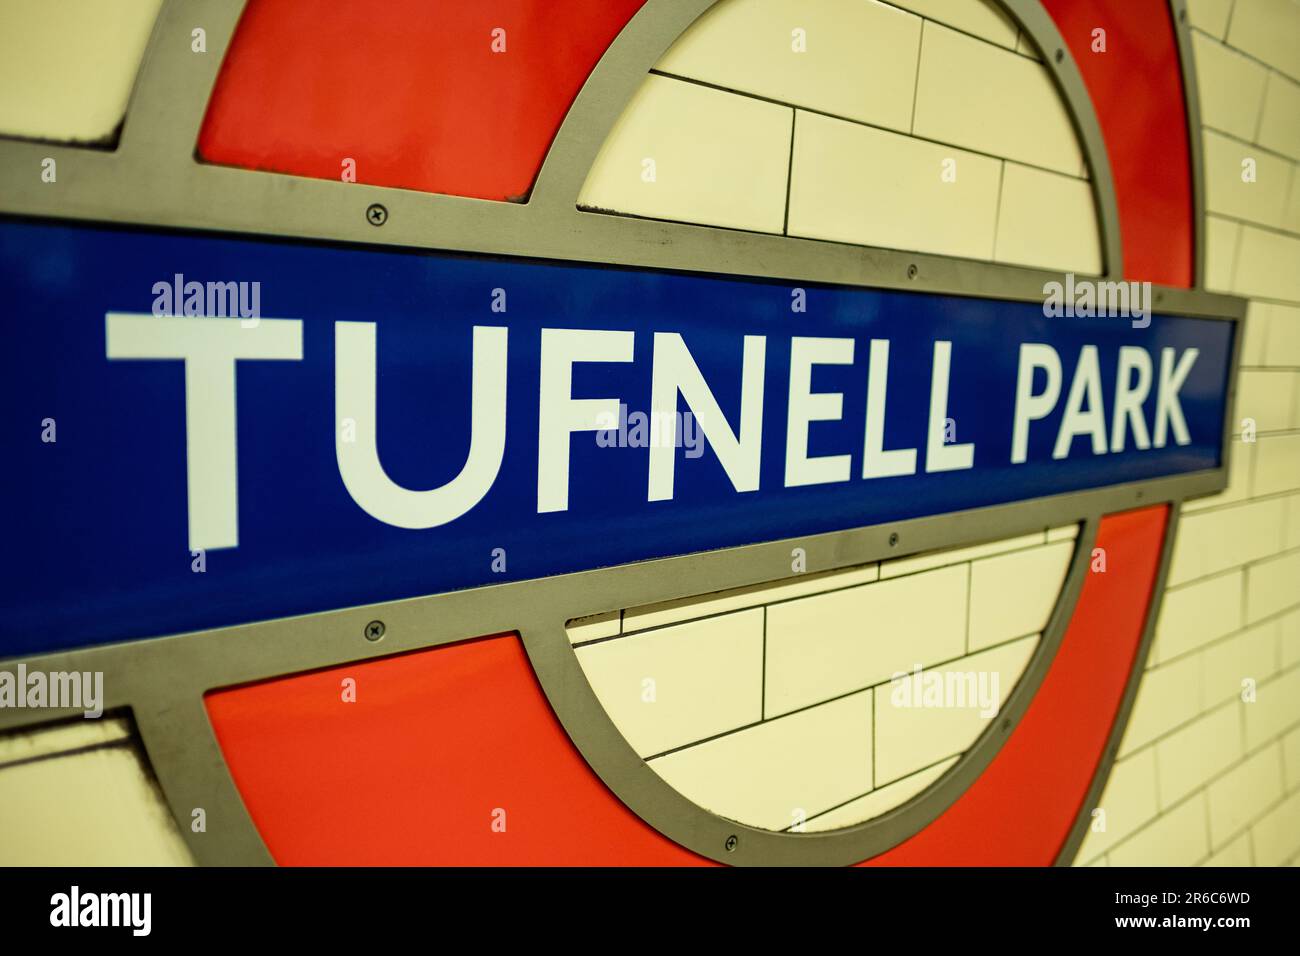 LONDRES - 21 MARS 2023 : station de métro Tufnell Park, station Northern Line dans la région d'Islington Camden, dans le nord de Londres Banque D'Images